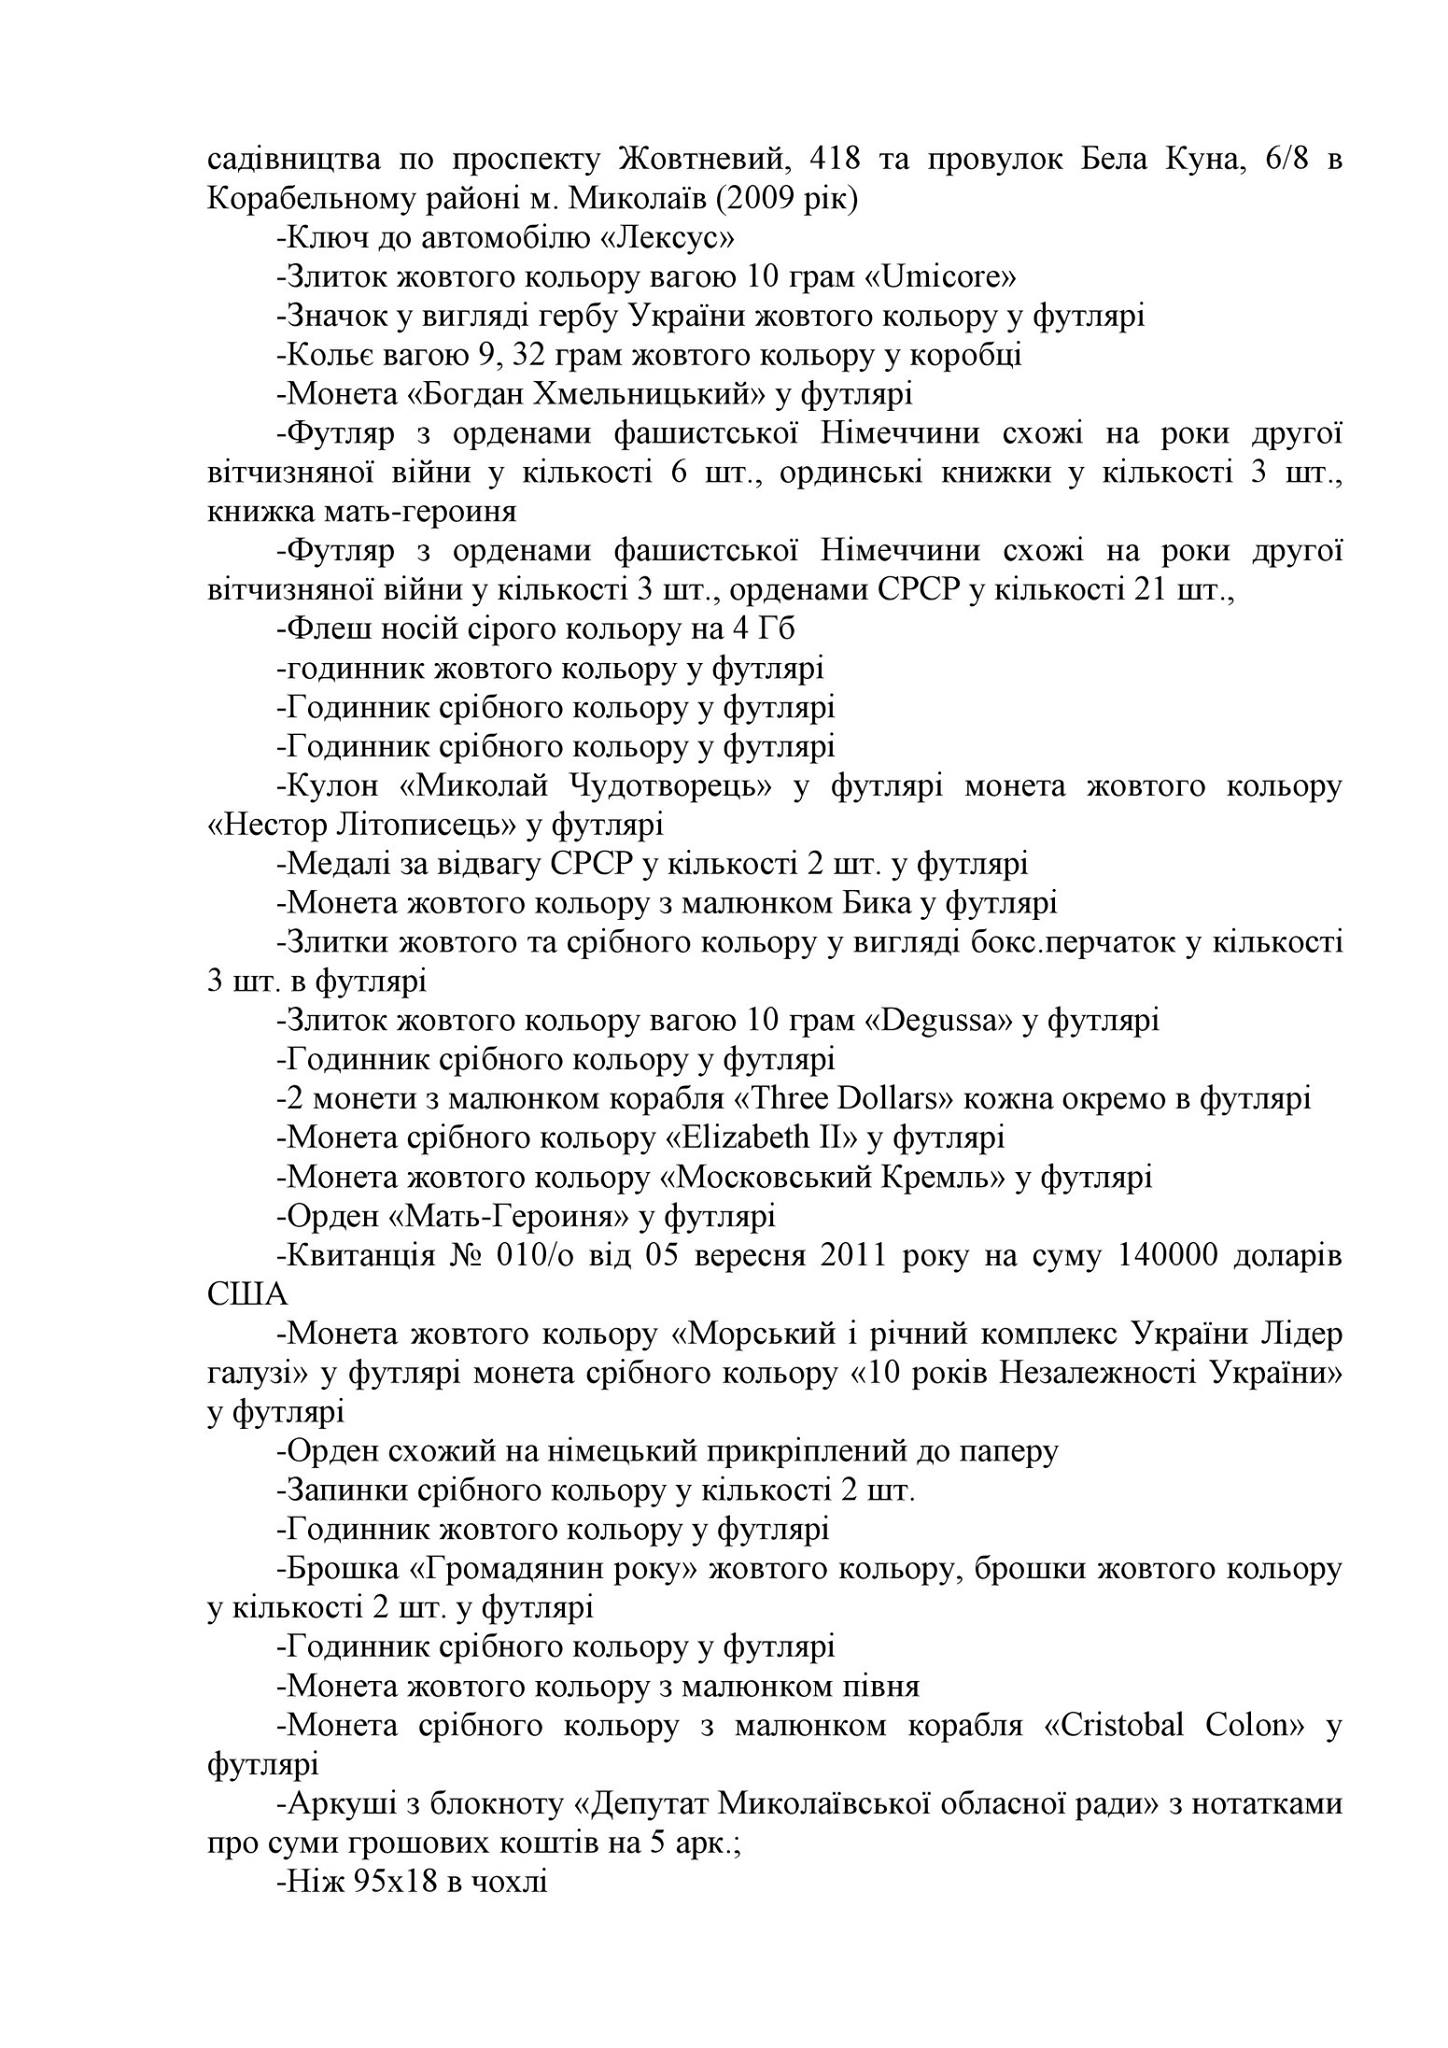 Повний список скарбів миколаївського "Аладдіна", вилучених військовою прокуратурою - фото 3